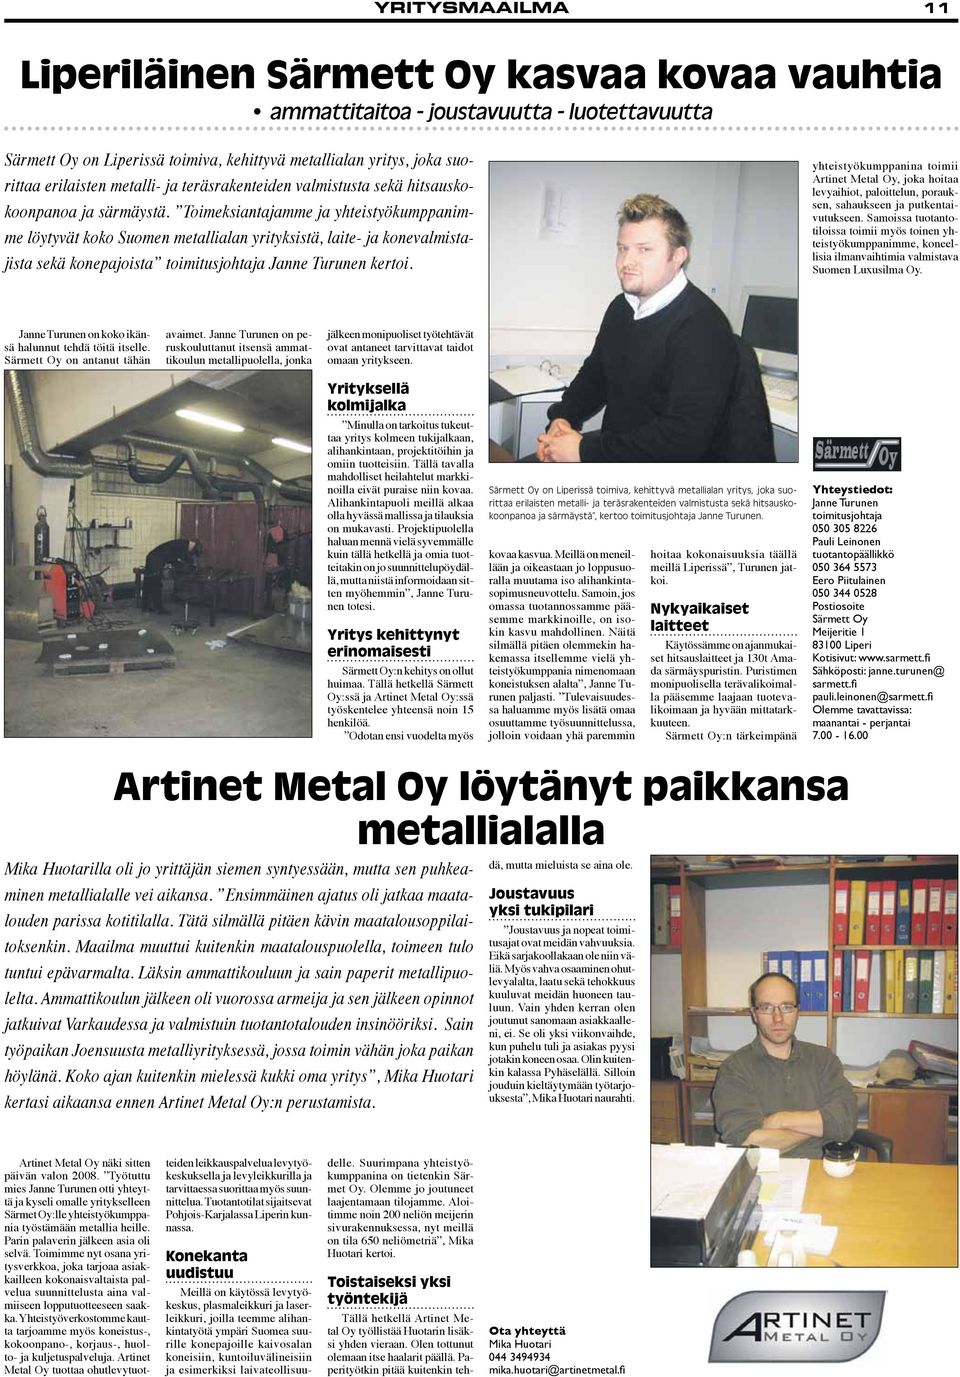 Toimeksiantajamme ja yhteistyökumppanimme löytyvät koko Suomen metallialan yrityksistä, laite- ja konevalmistajista sekä konepajoista toimitusjohtaja Janne Turunen kertoi.